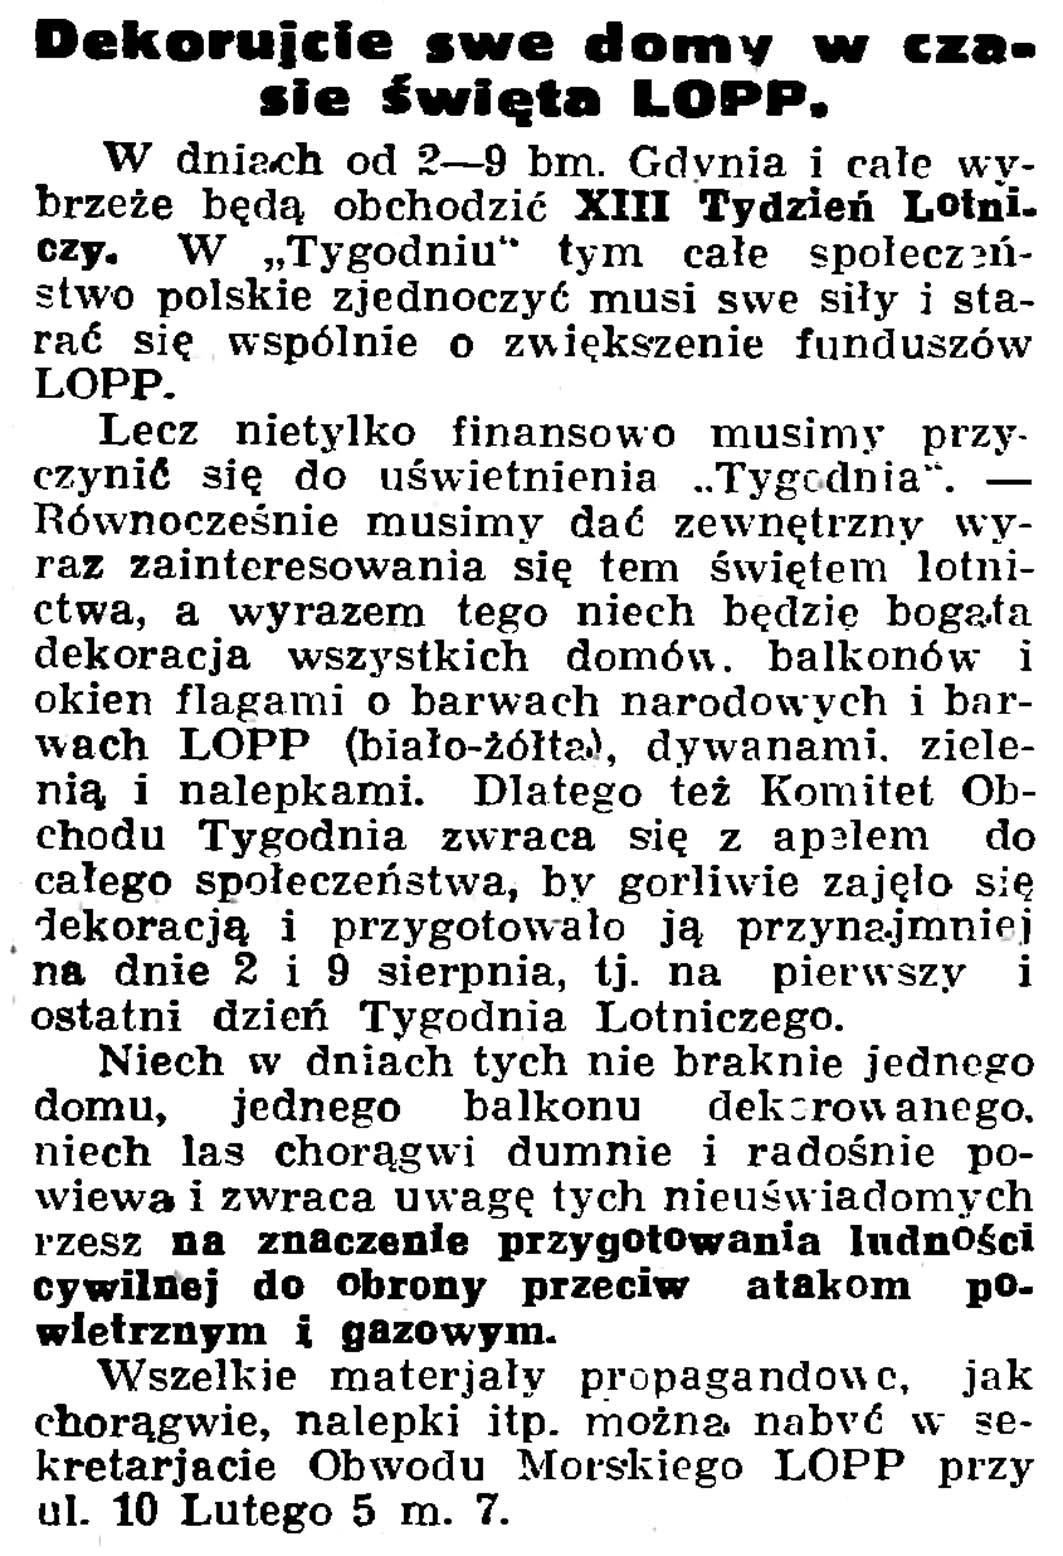 Dekorujcie swe domy w czasie święta LOPP // Gazeta Gdańska. - 1936, nr 174, s. 12